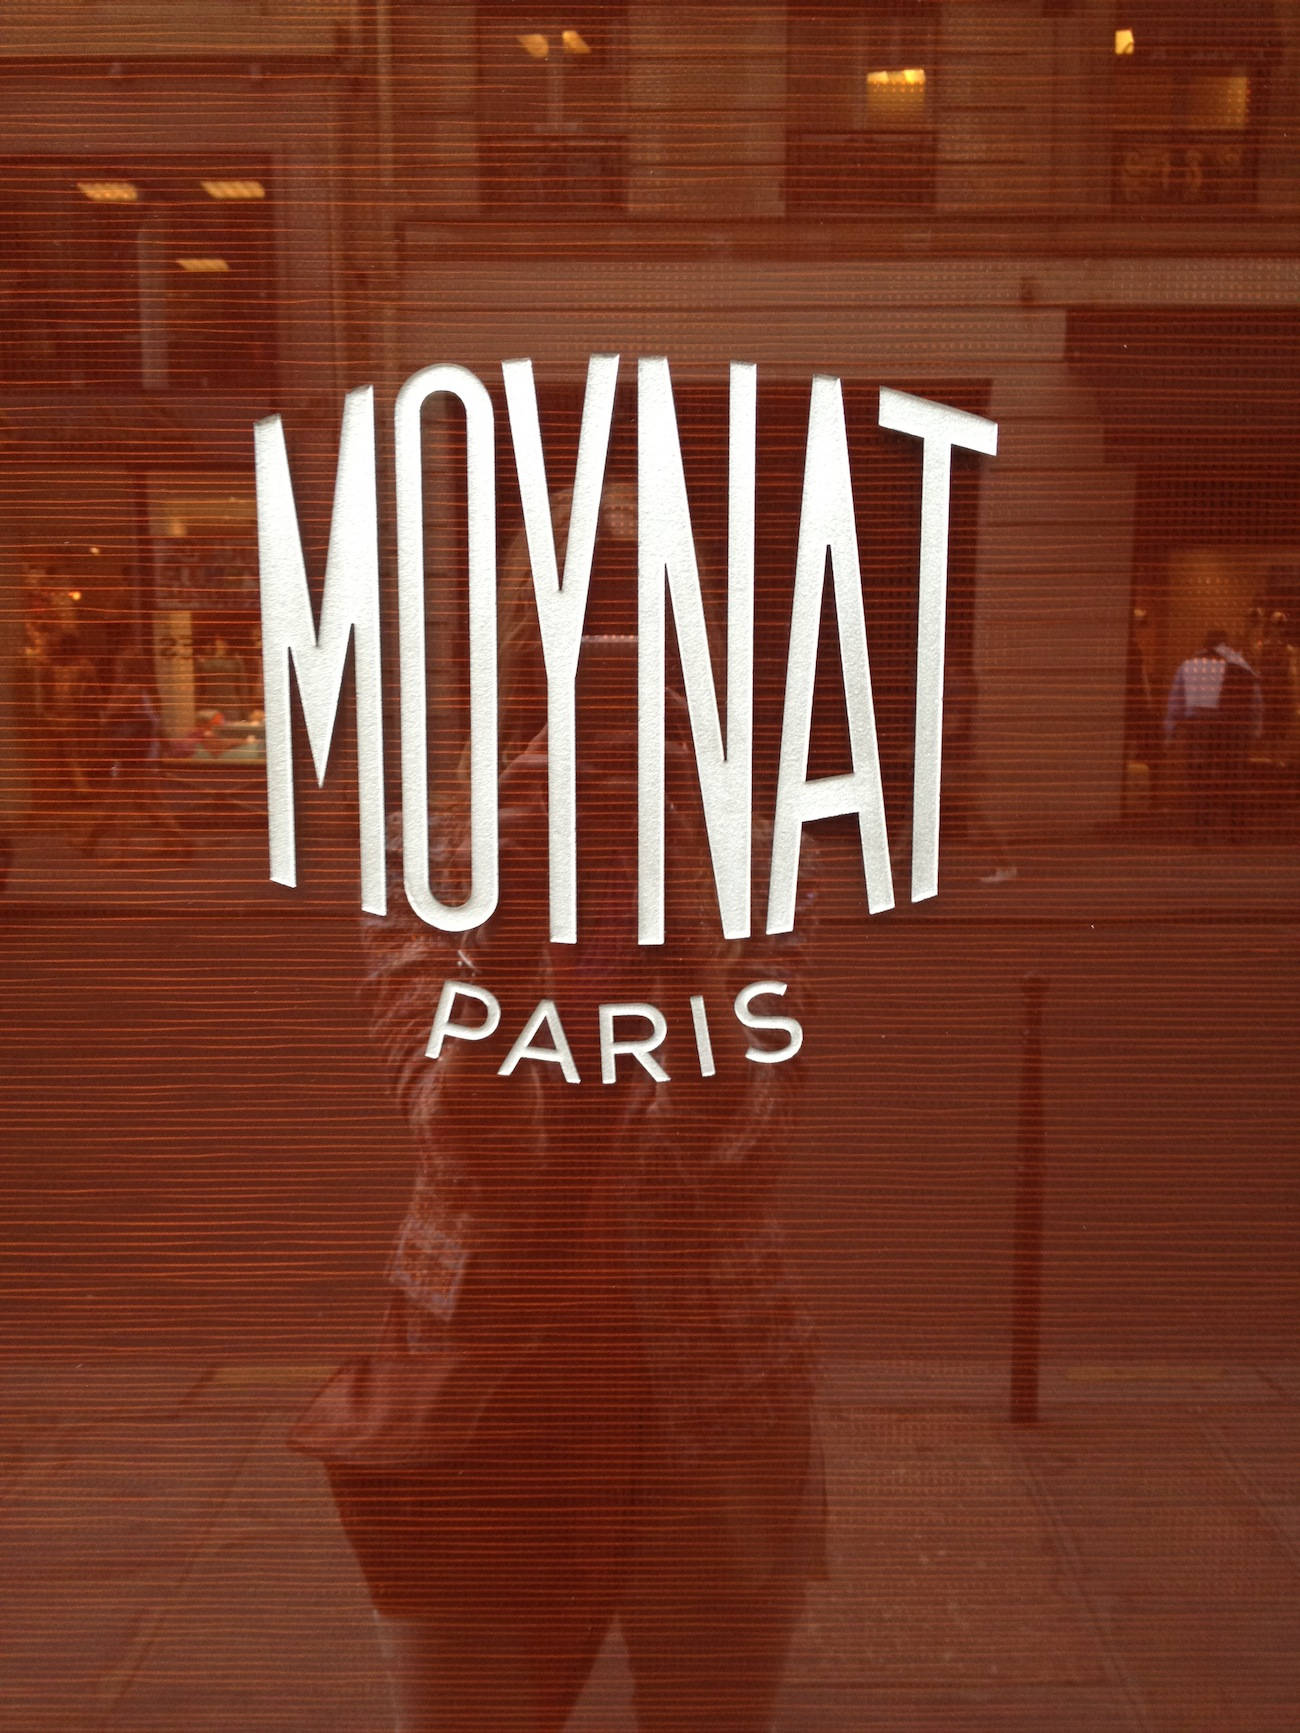 Download Moynat Paris Logo - Unmistakable Refinement Wallpaper ...